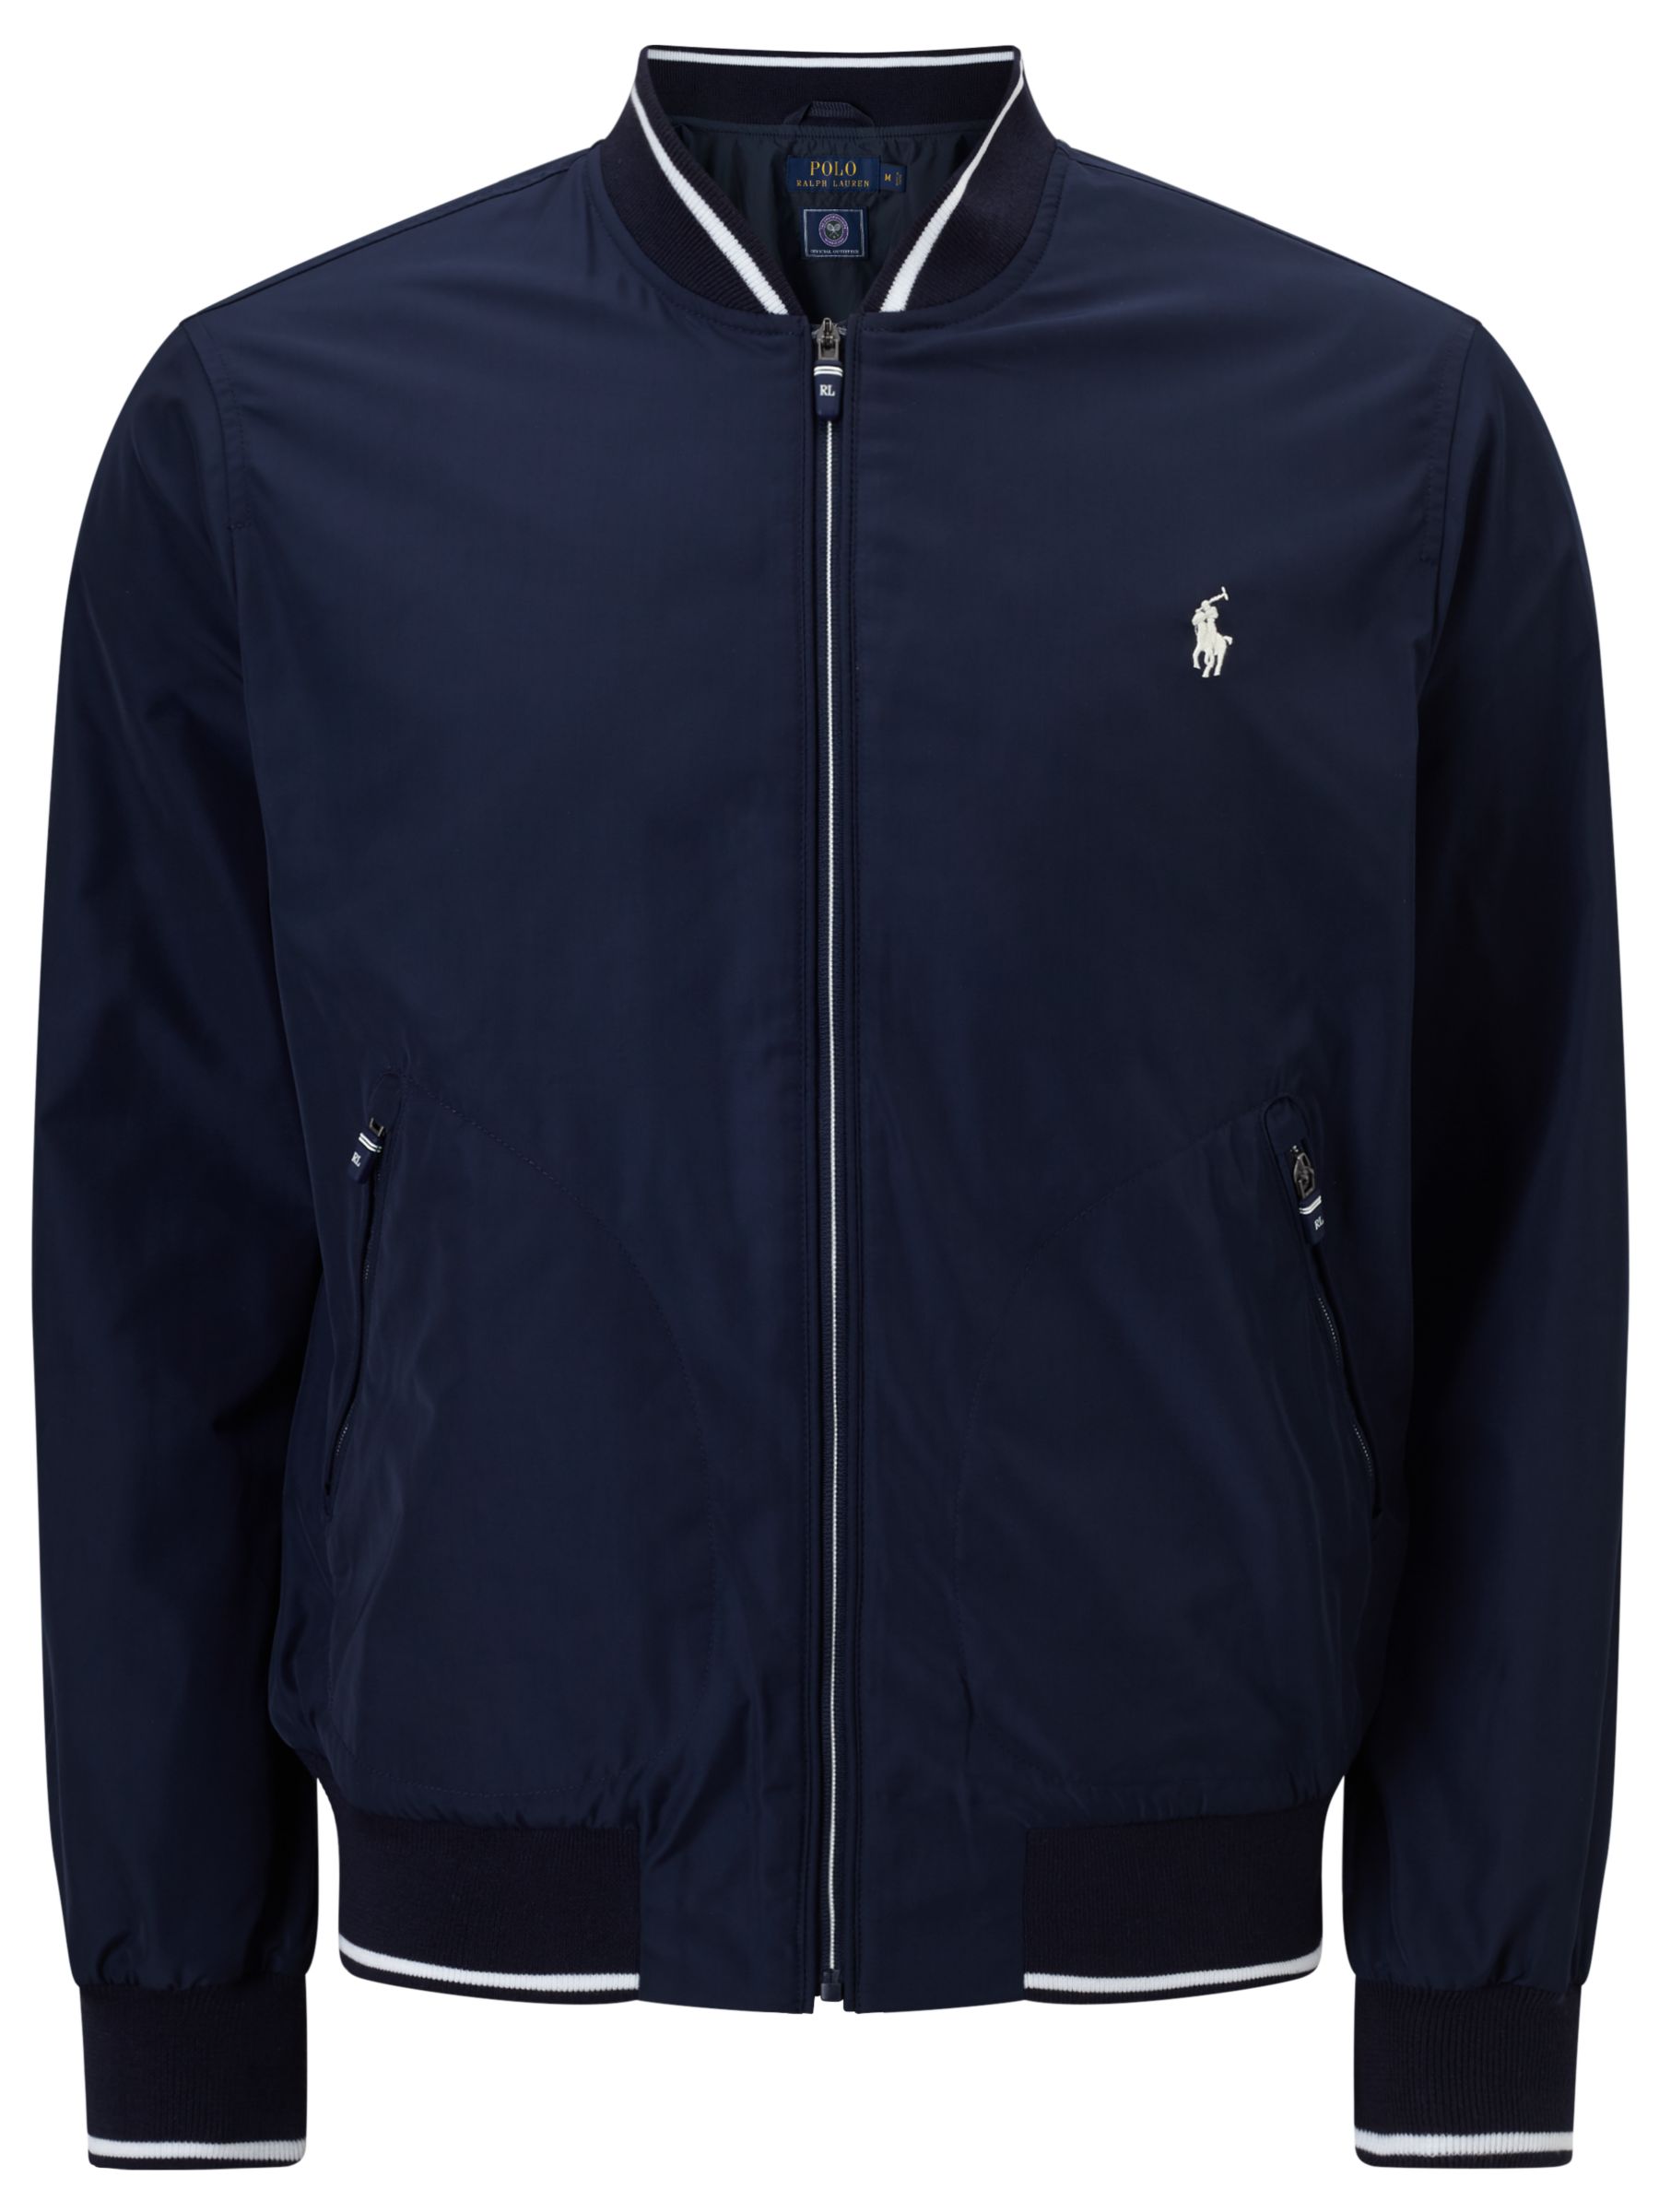 Polo Ralph Lauren Tennis Jacket, Navy